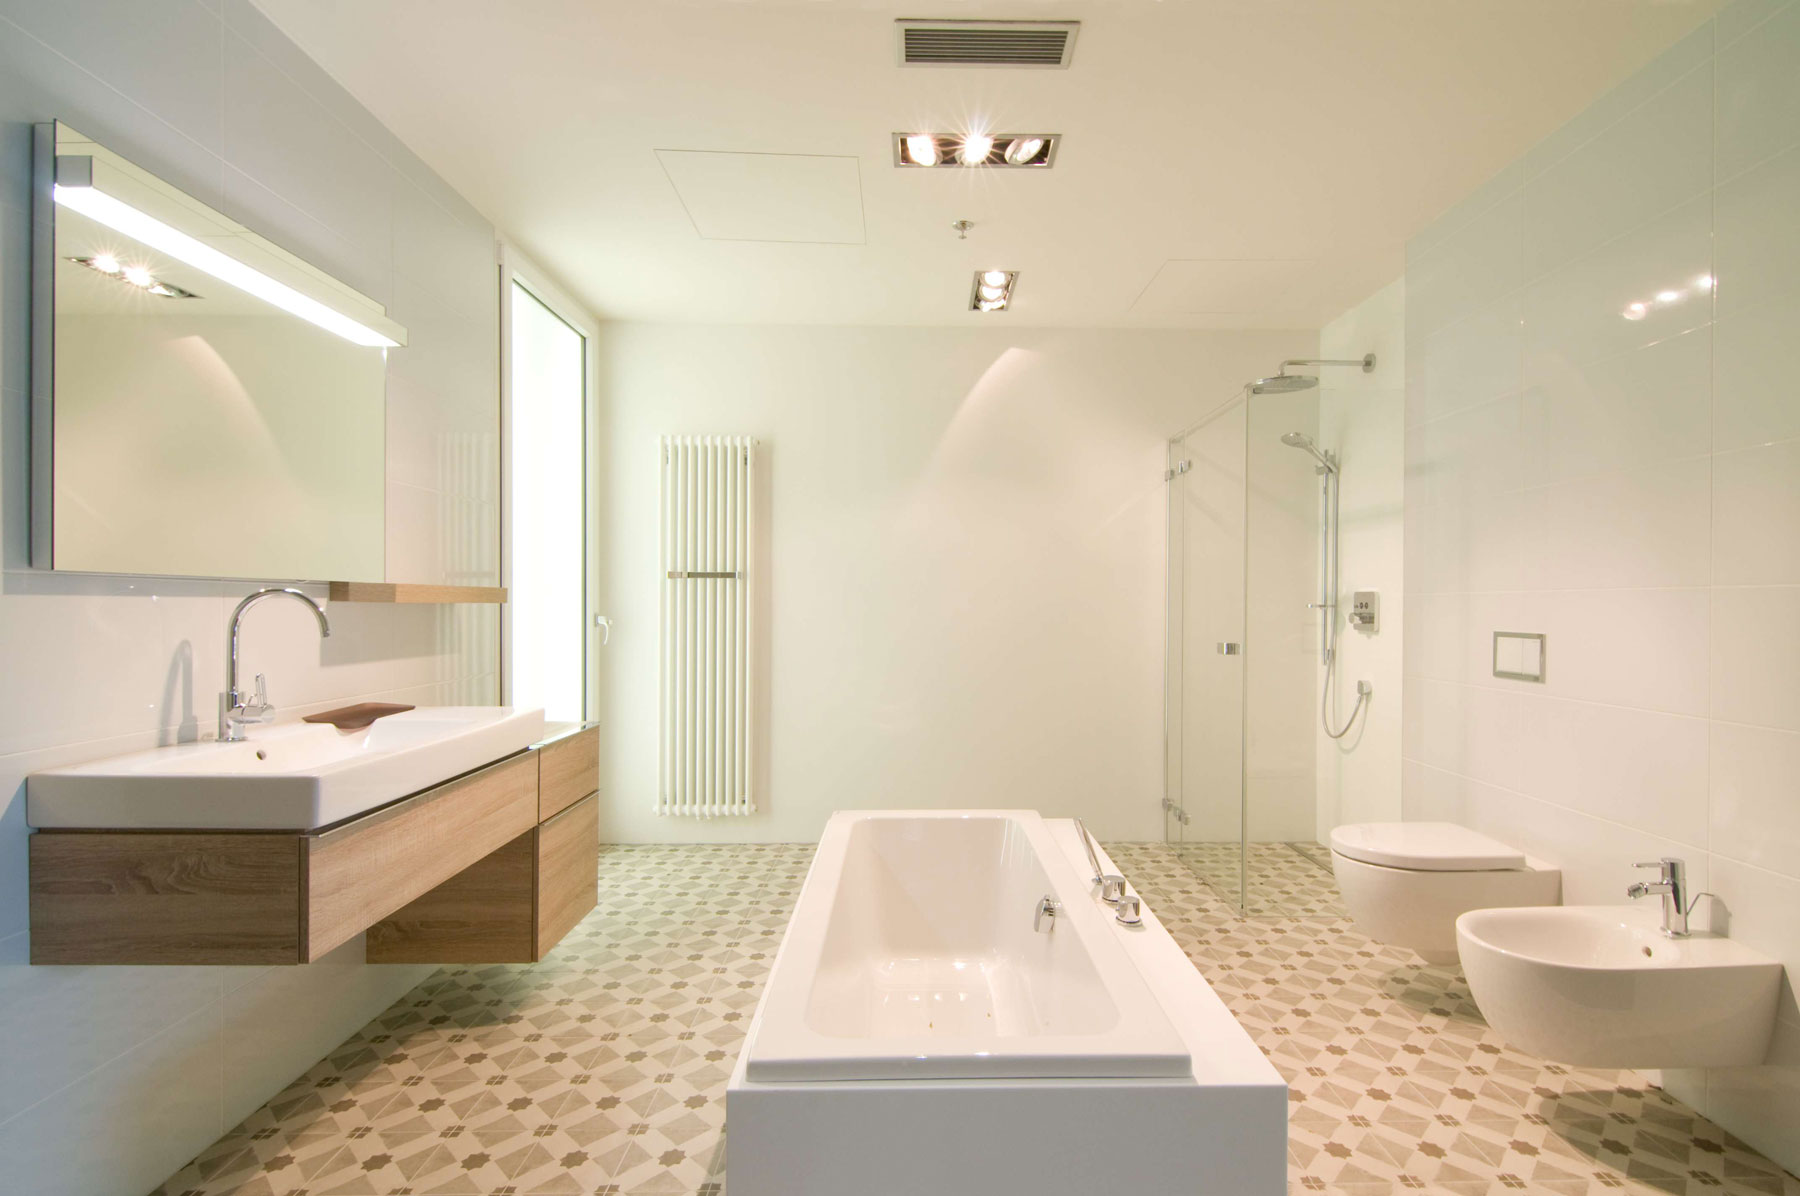 Popis: Útulná a prostorná zároveň, koupelna z řady KERAMAG iCon s volně stojící vanou MODO, dřevěným dekorem světlý dub a vkusně zalícovaným tlačítkem Geberit Omega60.